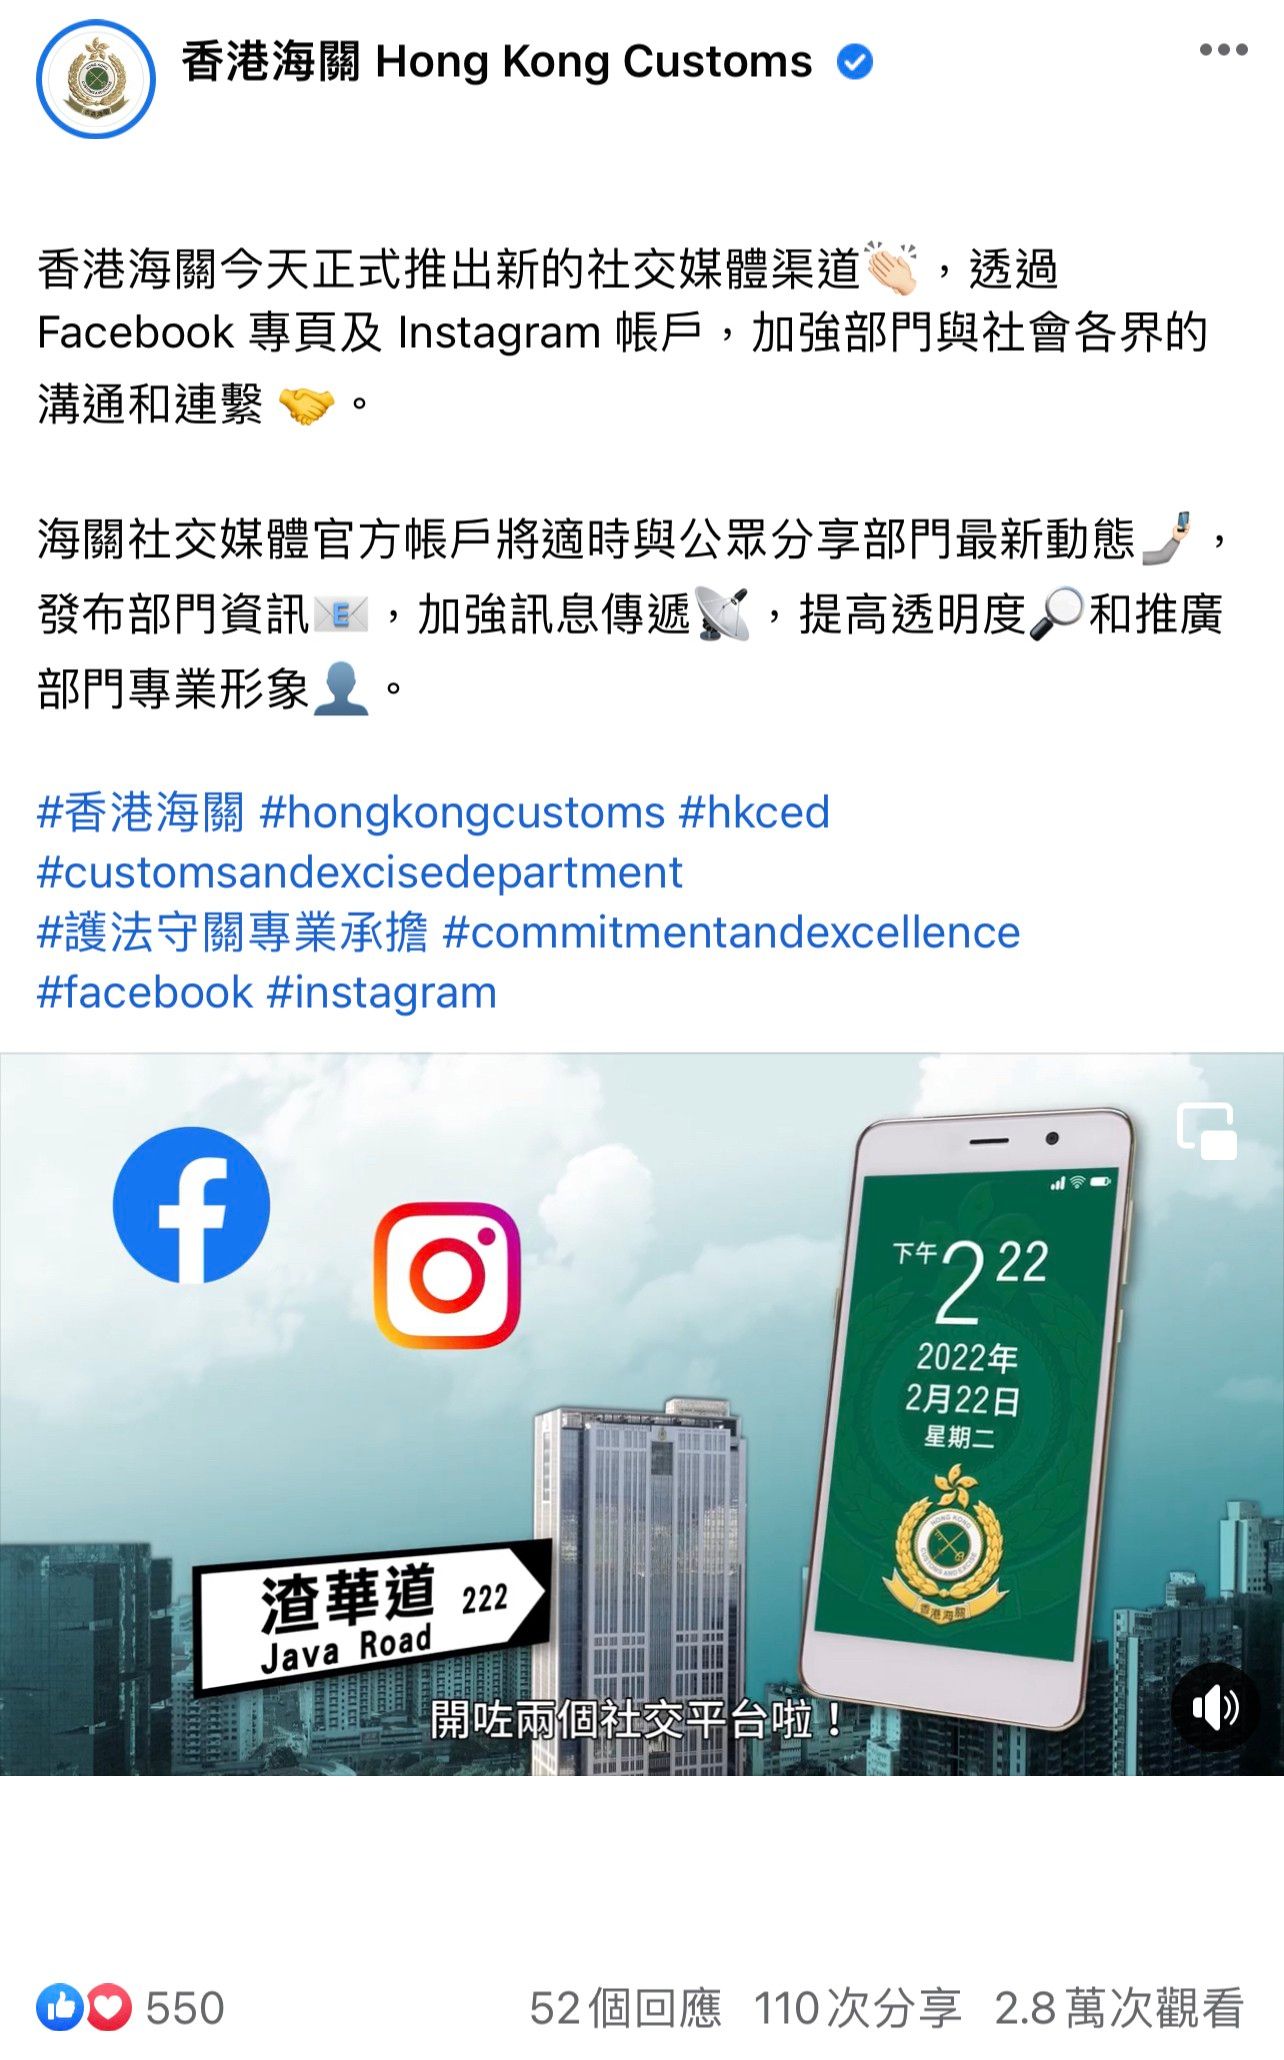 香港海關於二○二二年二月二十二日開通Facebook和Instagram社交媒體渠道，發放最新部門資訊，加強部門與社會各界的溝通和連繫。